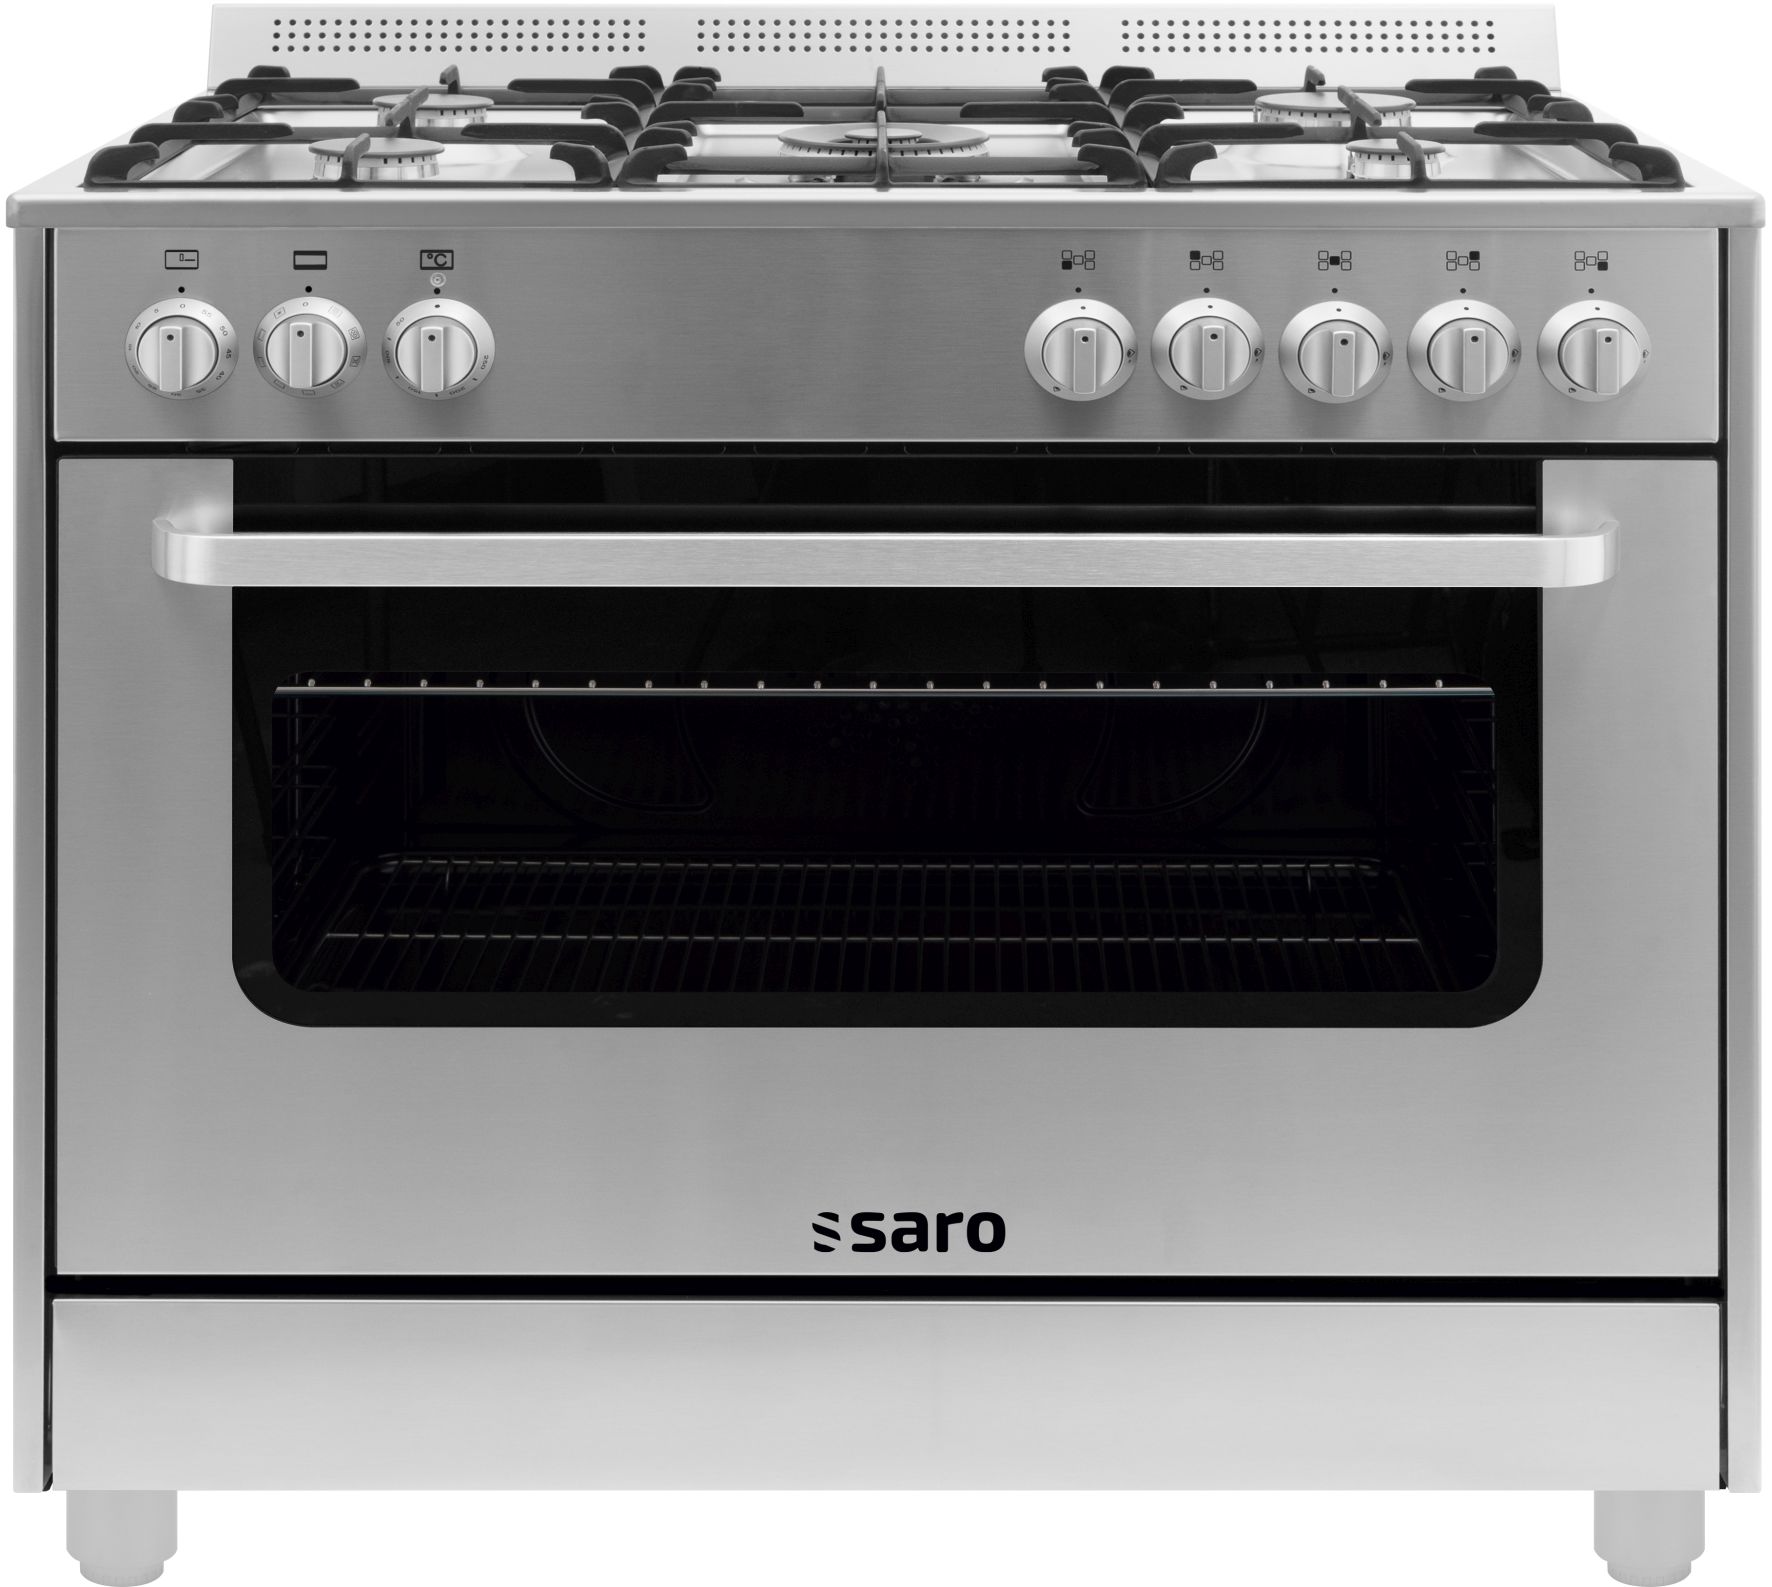 Vrijgevig inkomen regelmatig Multifunctioneel gasfornuis met electrische oven | Saro